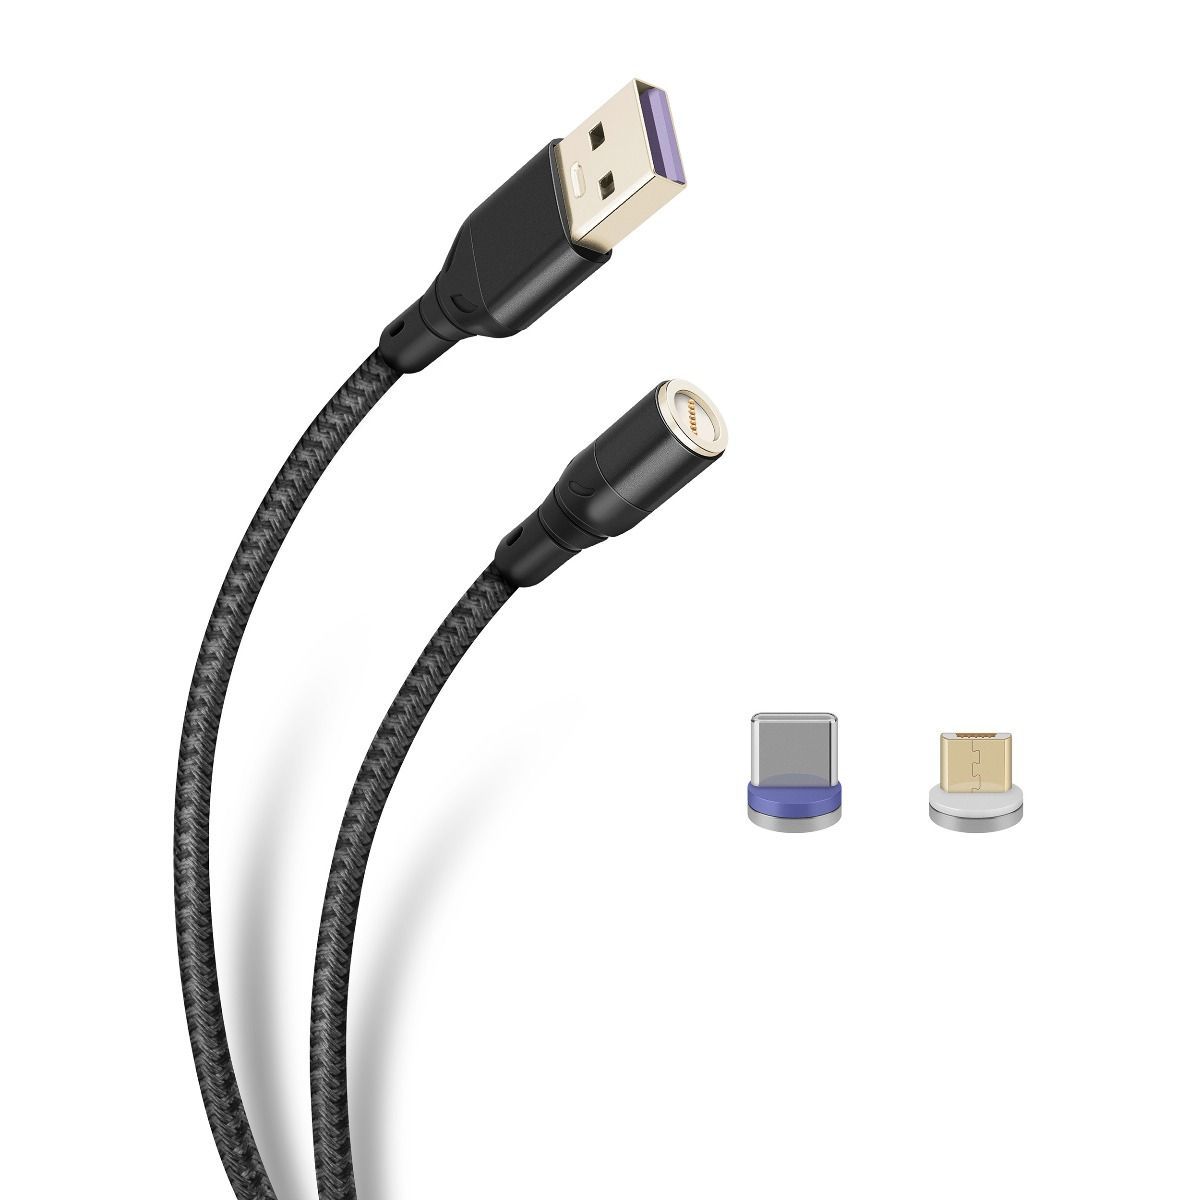 Cable magnético 2 en 1, USB a micro USB y USB C, de 1 m